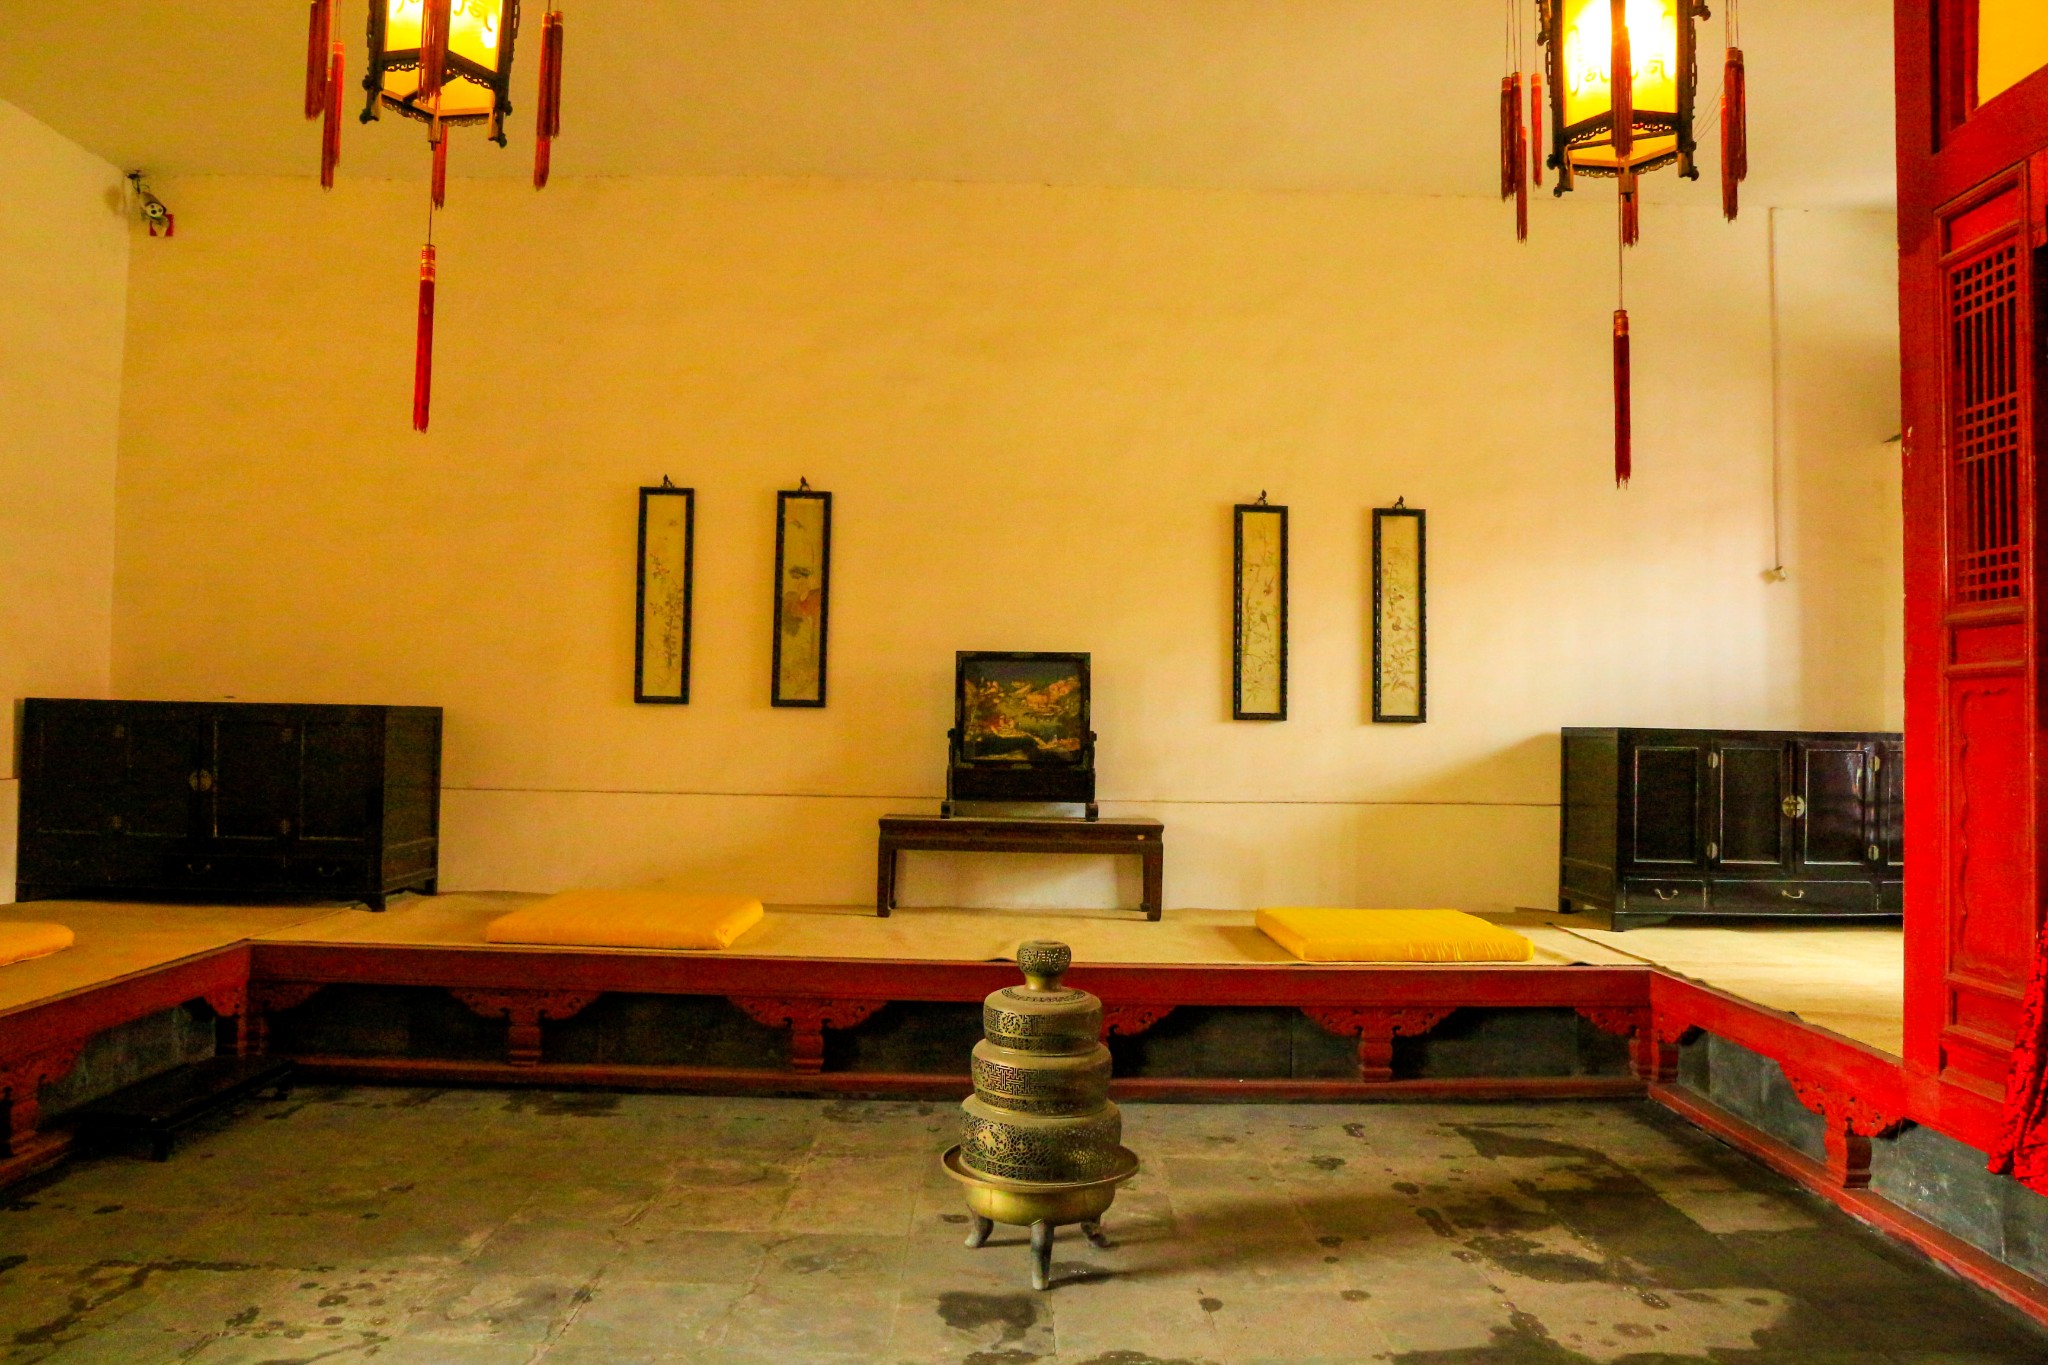 沈阳故宫博物院全攻略,中国仅存的两大宫殿建筑群之一 